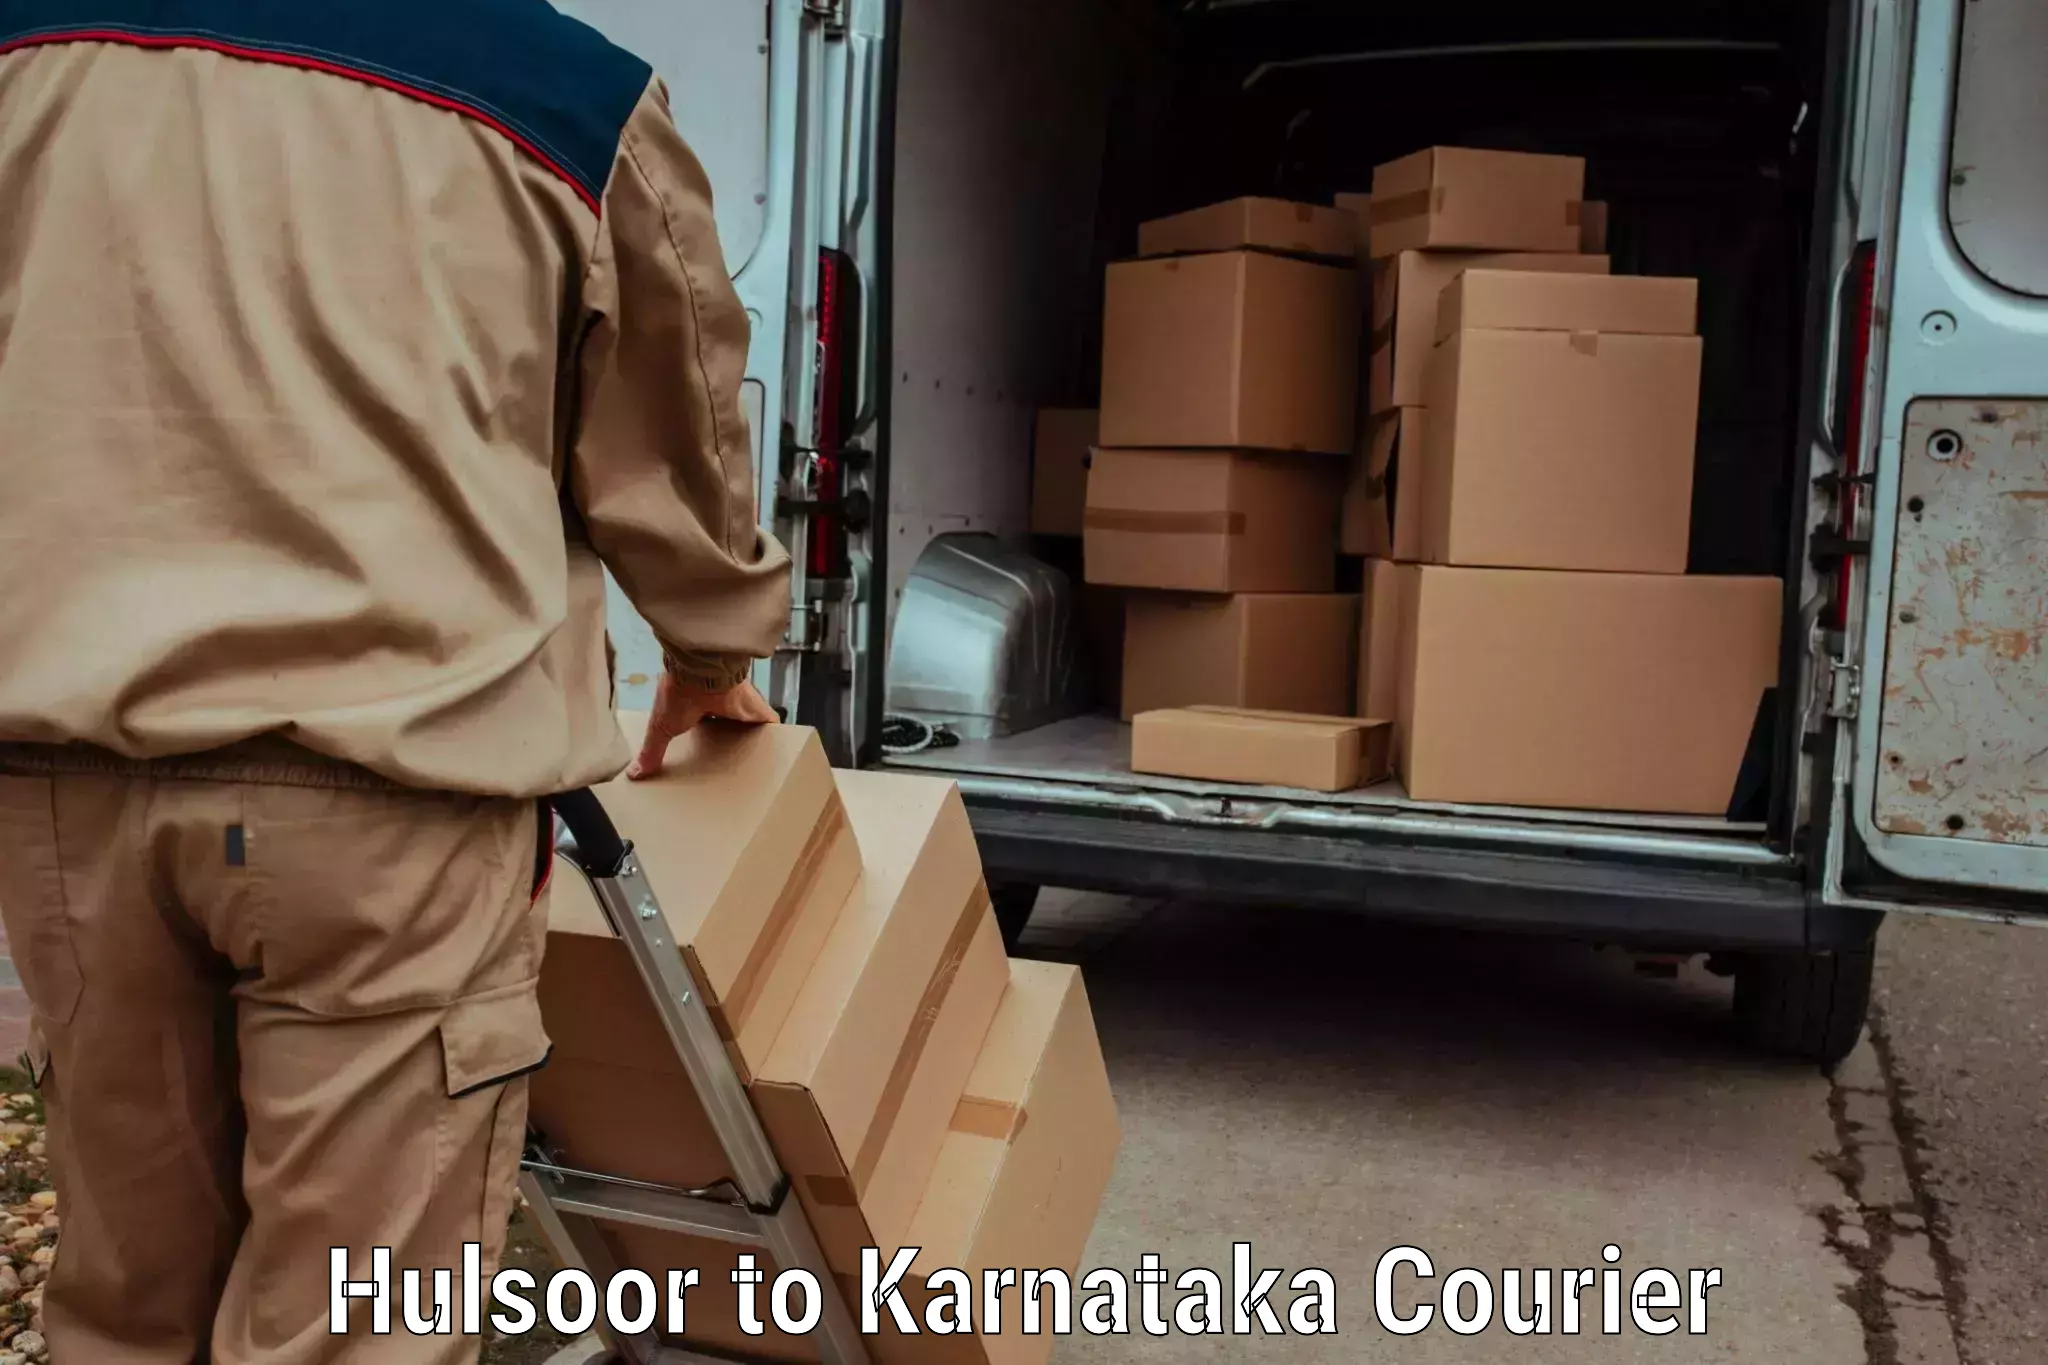 Fast delivery service Hulsoor to Kanakapura